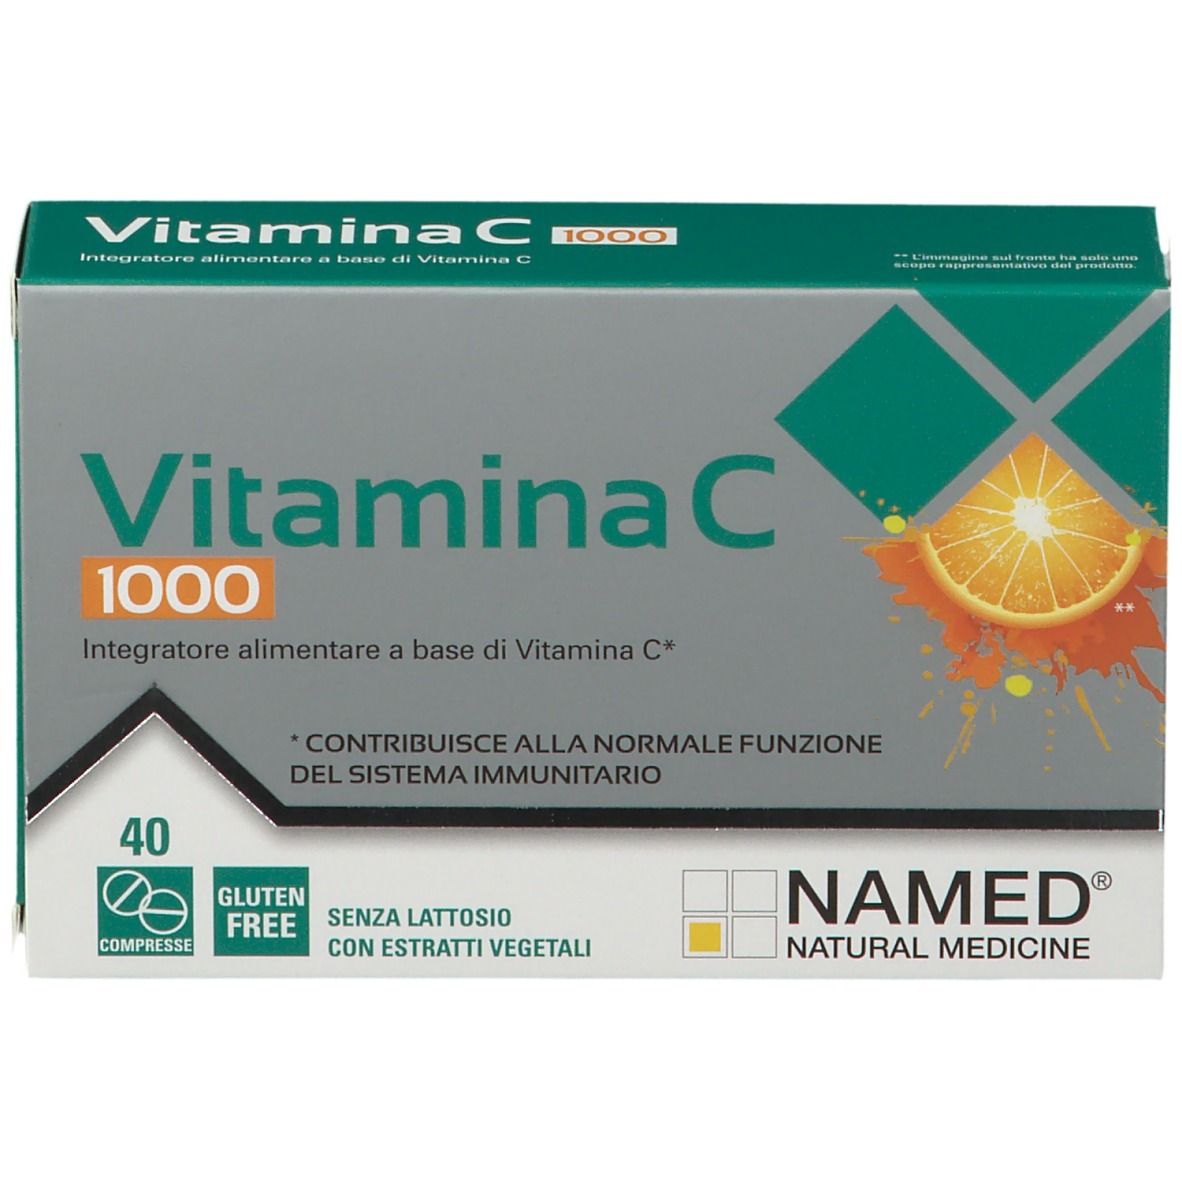 NAMED® Vitamina C 1000